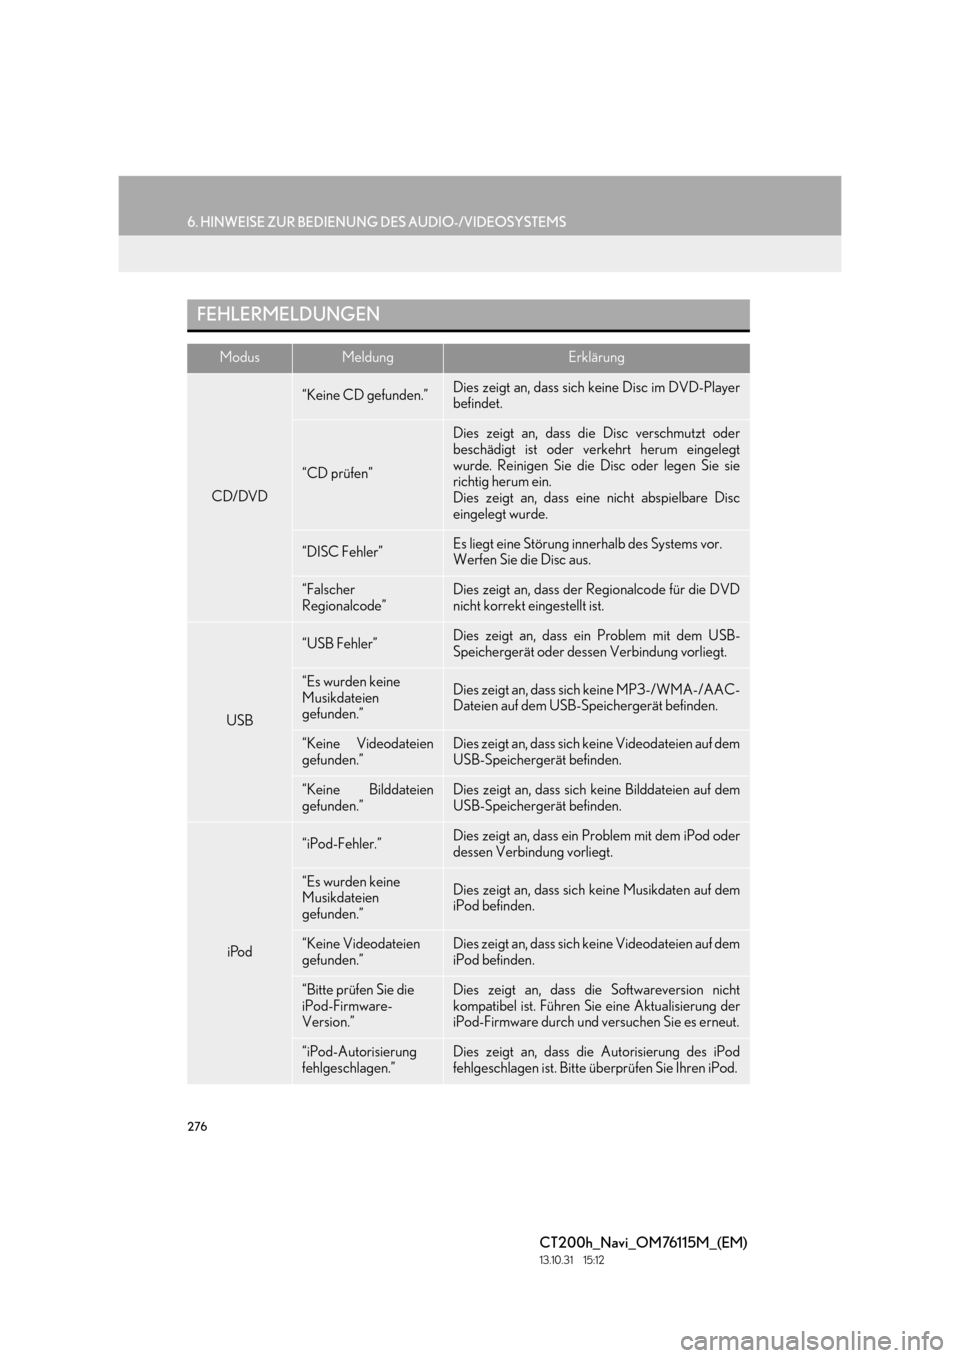 Lexus CT200h 2014  Navigation Handbuch (in German) 276
6. HINWEISE ZUR BEDIENUNG DES AUDIO-/VIDEOSYSTEMS
CT200h_Navi_OM76115M_(EM)
13.10.31     15:12
FEHLERMELDUNGEN
ModusMeldungErklärung
CD/DVD
“Keine CD gefunden.”Dies zeigt an, dass sich keine 